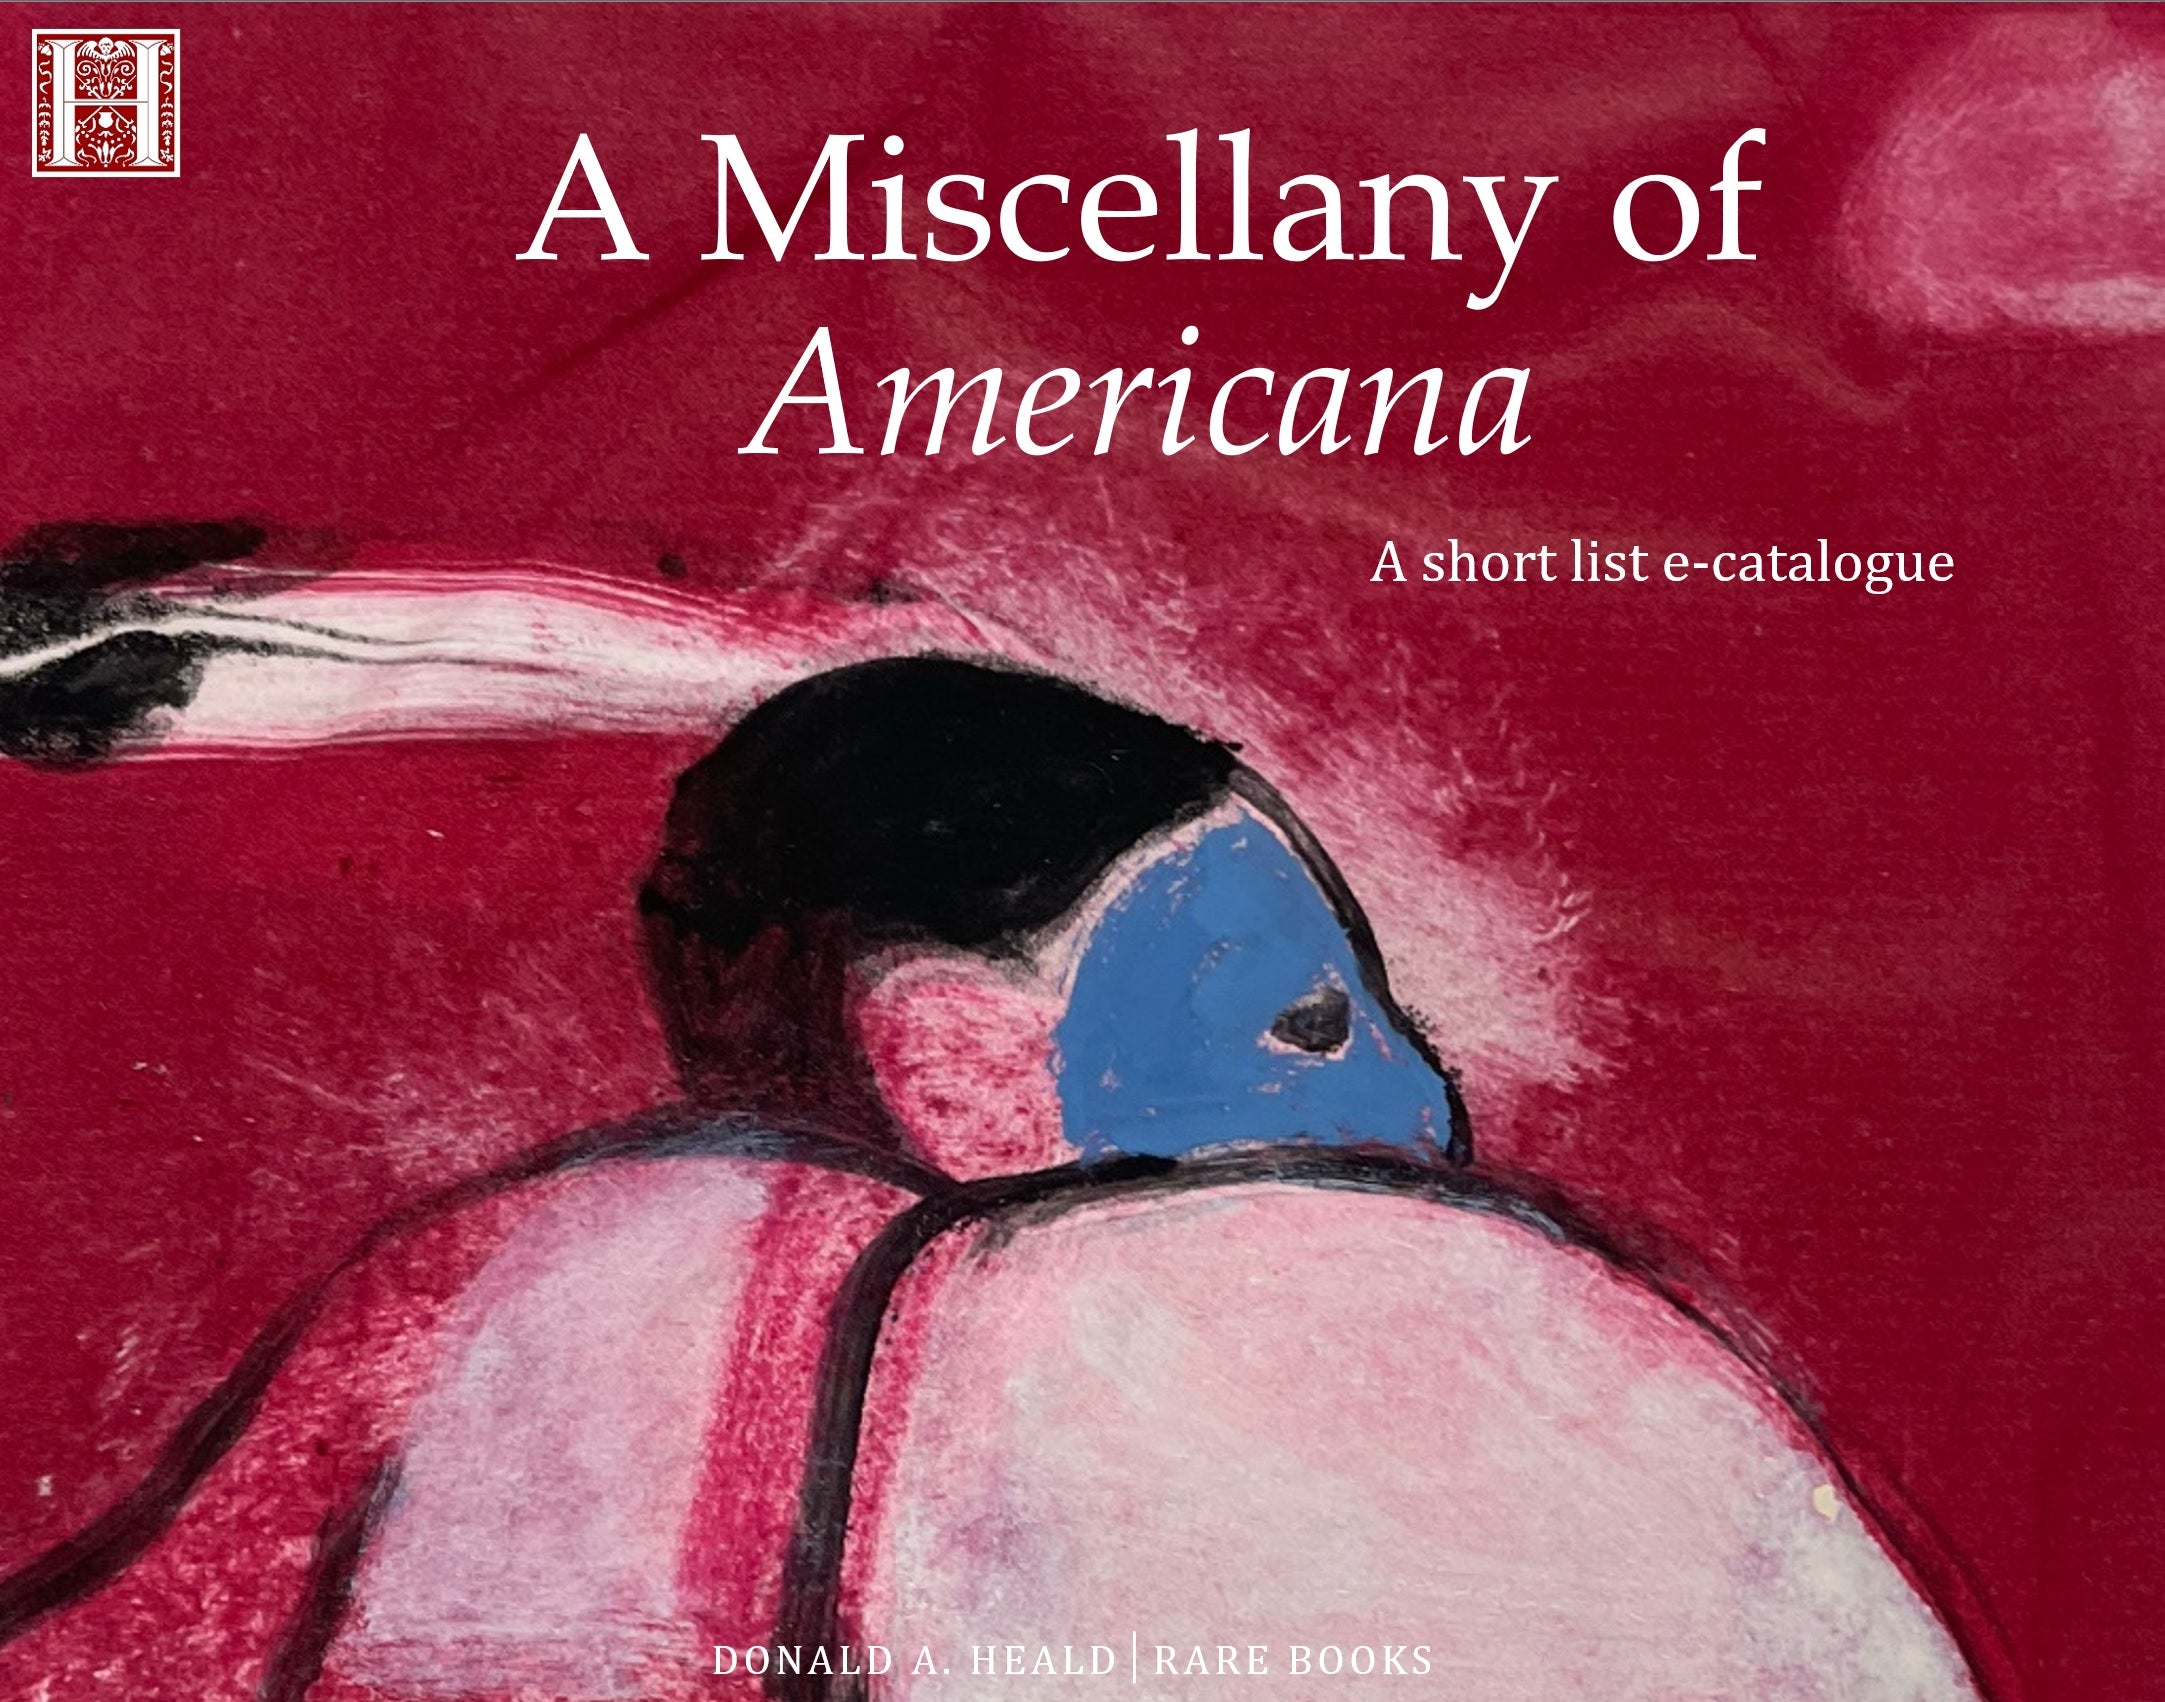 A Miscellany of Americana